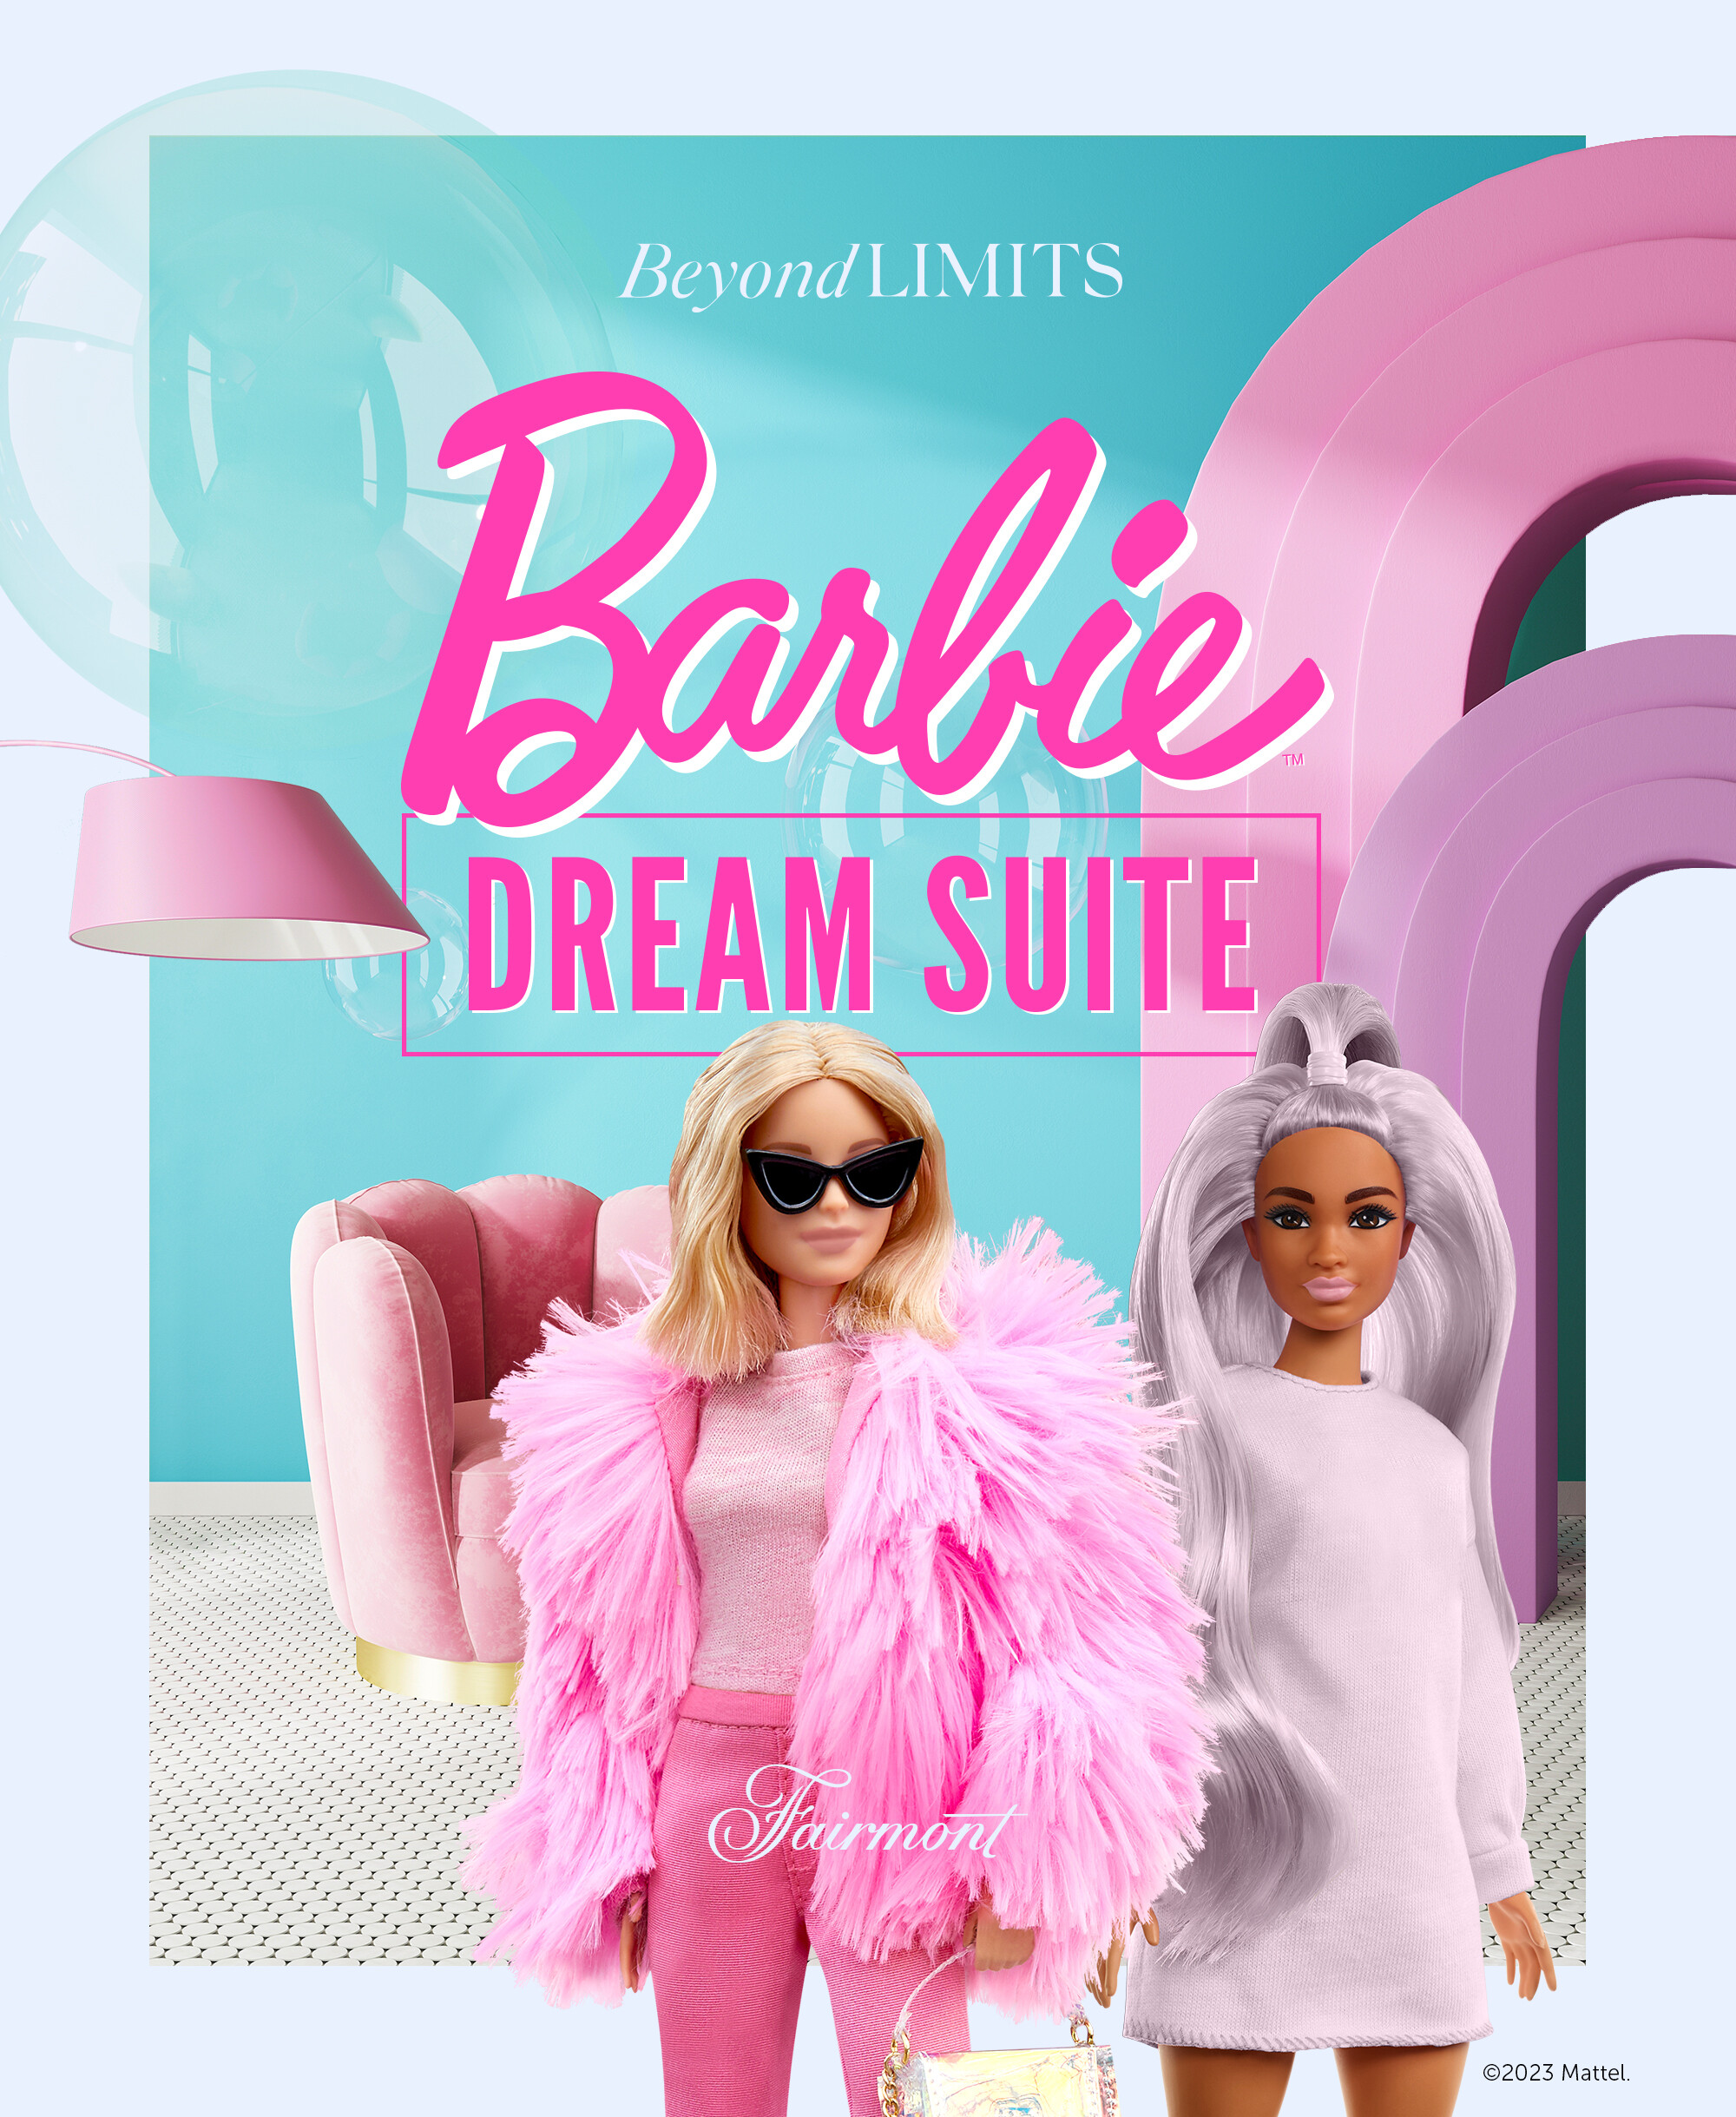 Fairmont The Queen Elizabeth - Barbie Dream Suite ENG-jpg